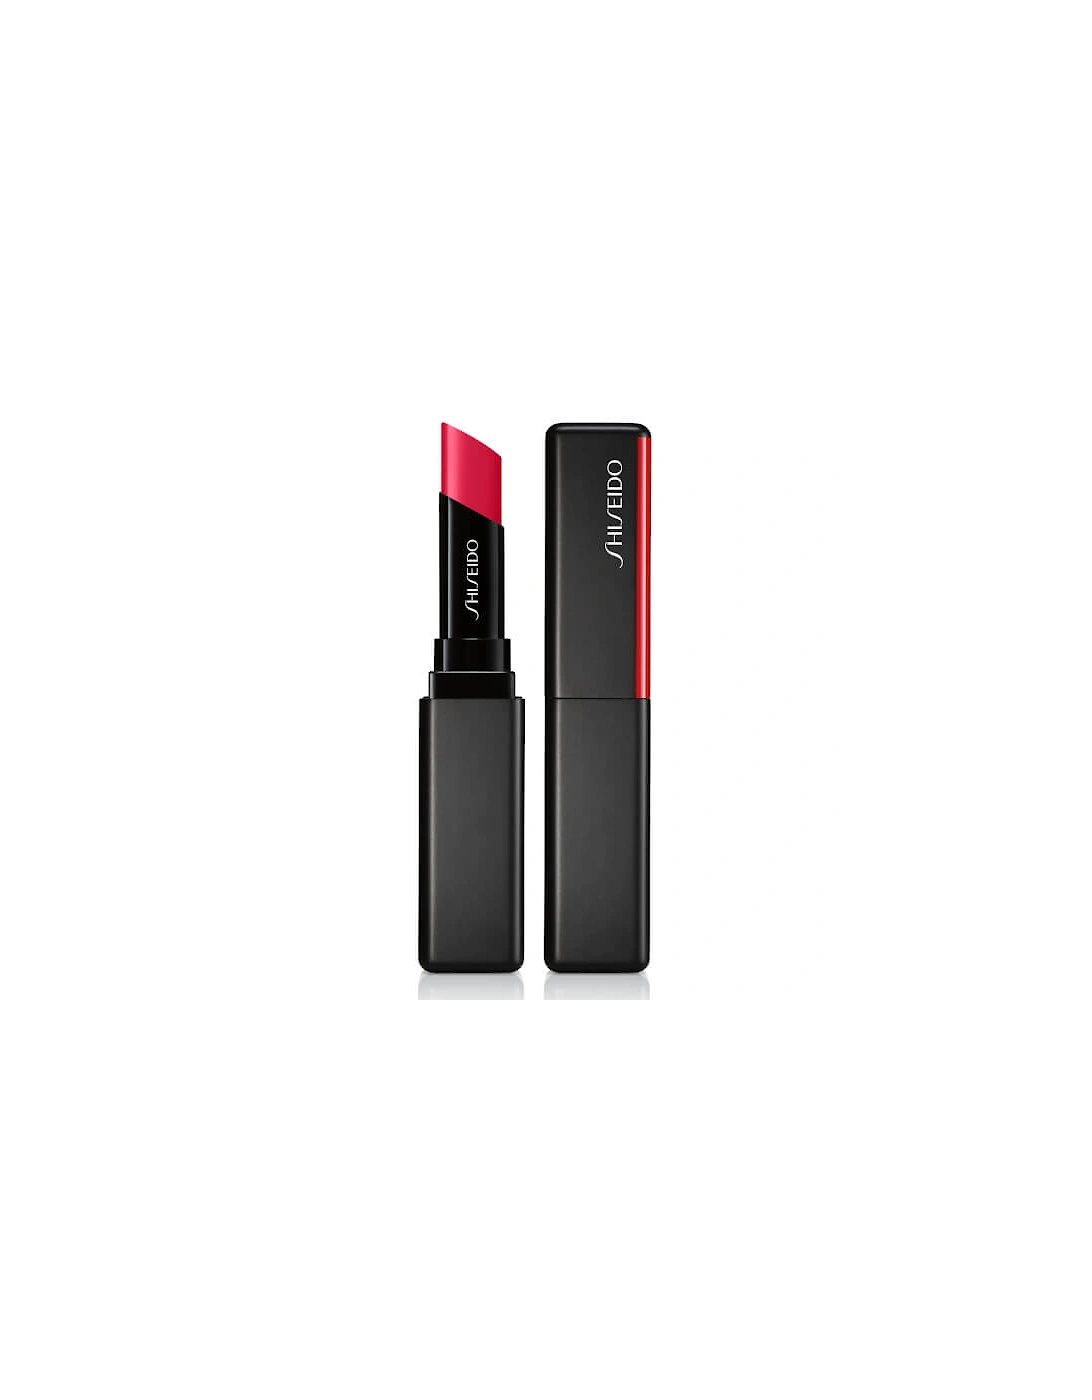 Colorgel Lipbalm - Redwood - Shiseido, 2 of 1